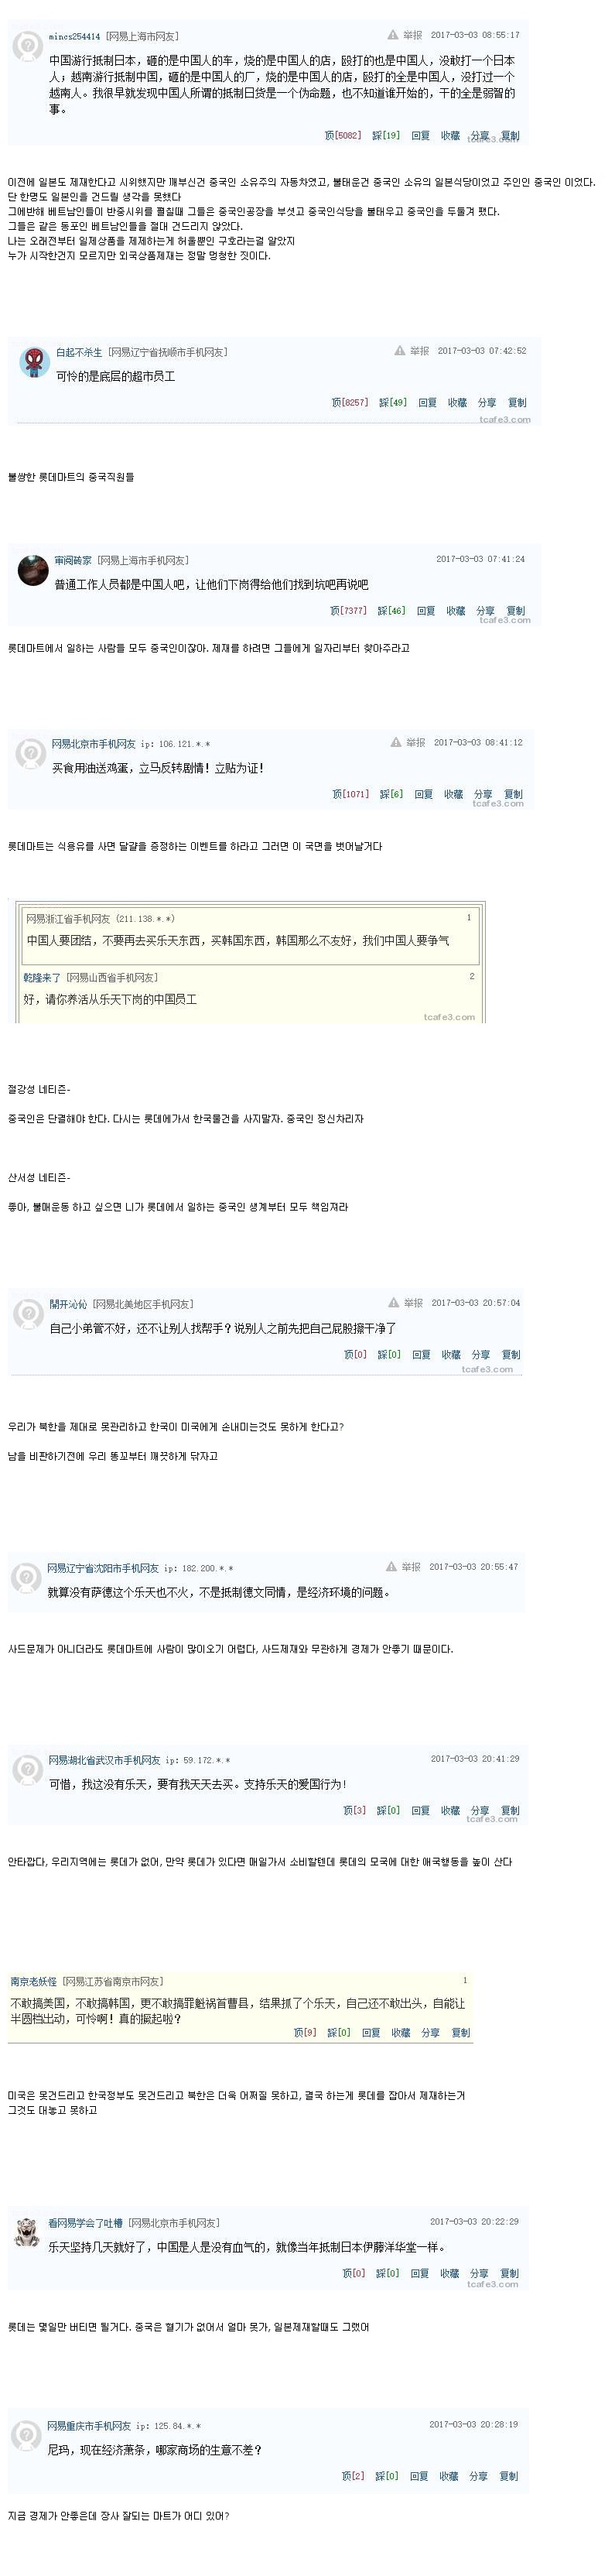 중국의 롯데제재 중국 네티즌들 반응 -.jpg